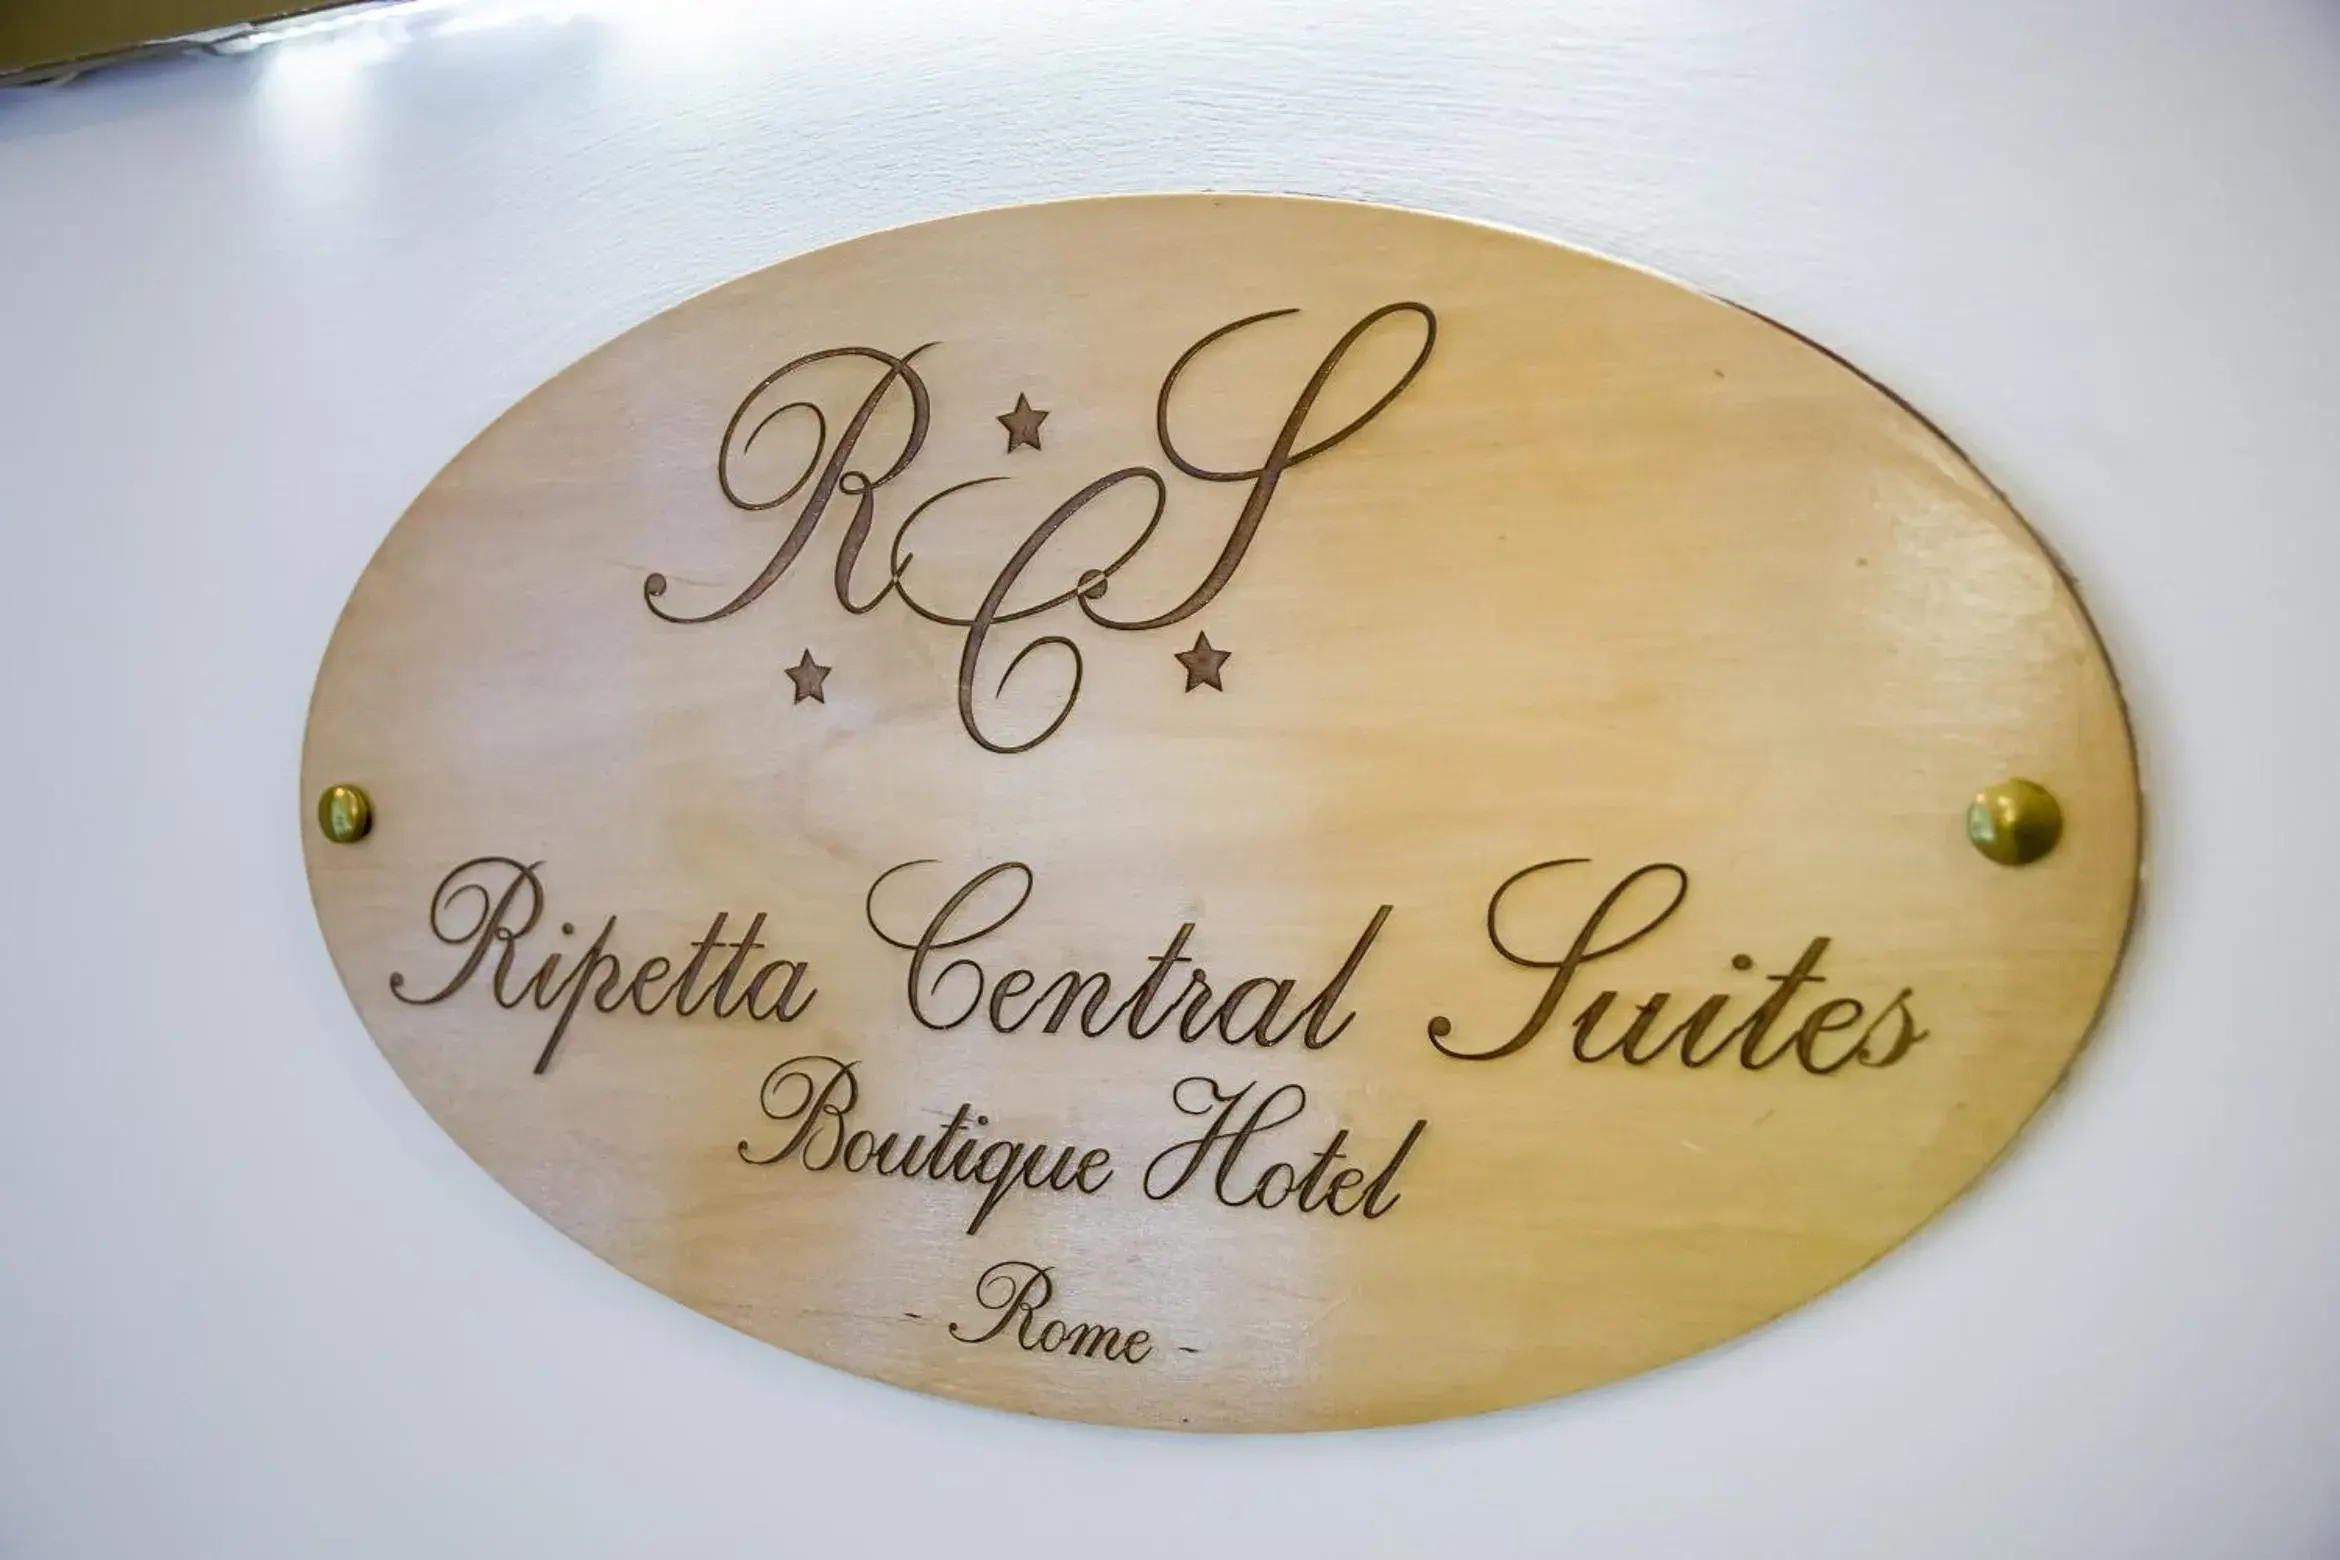 Ripetta Central Suites